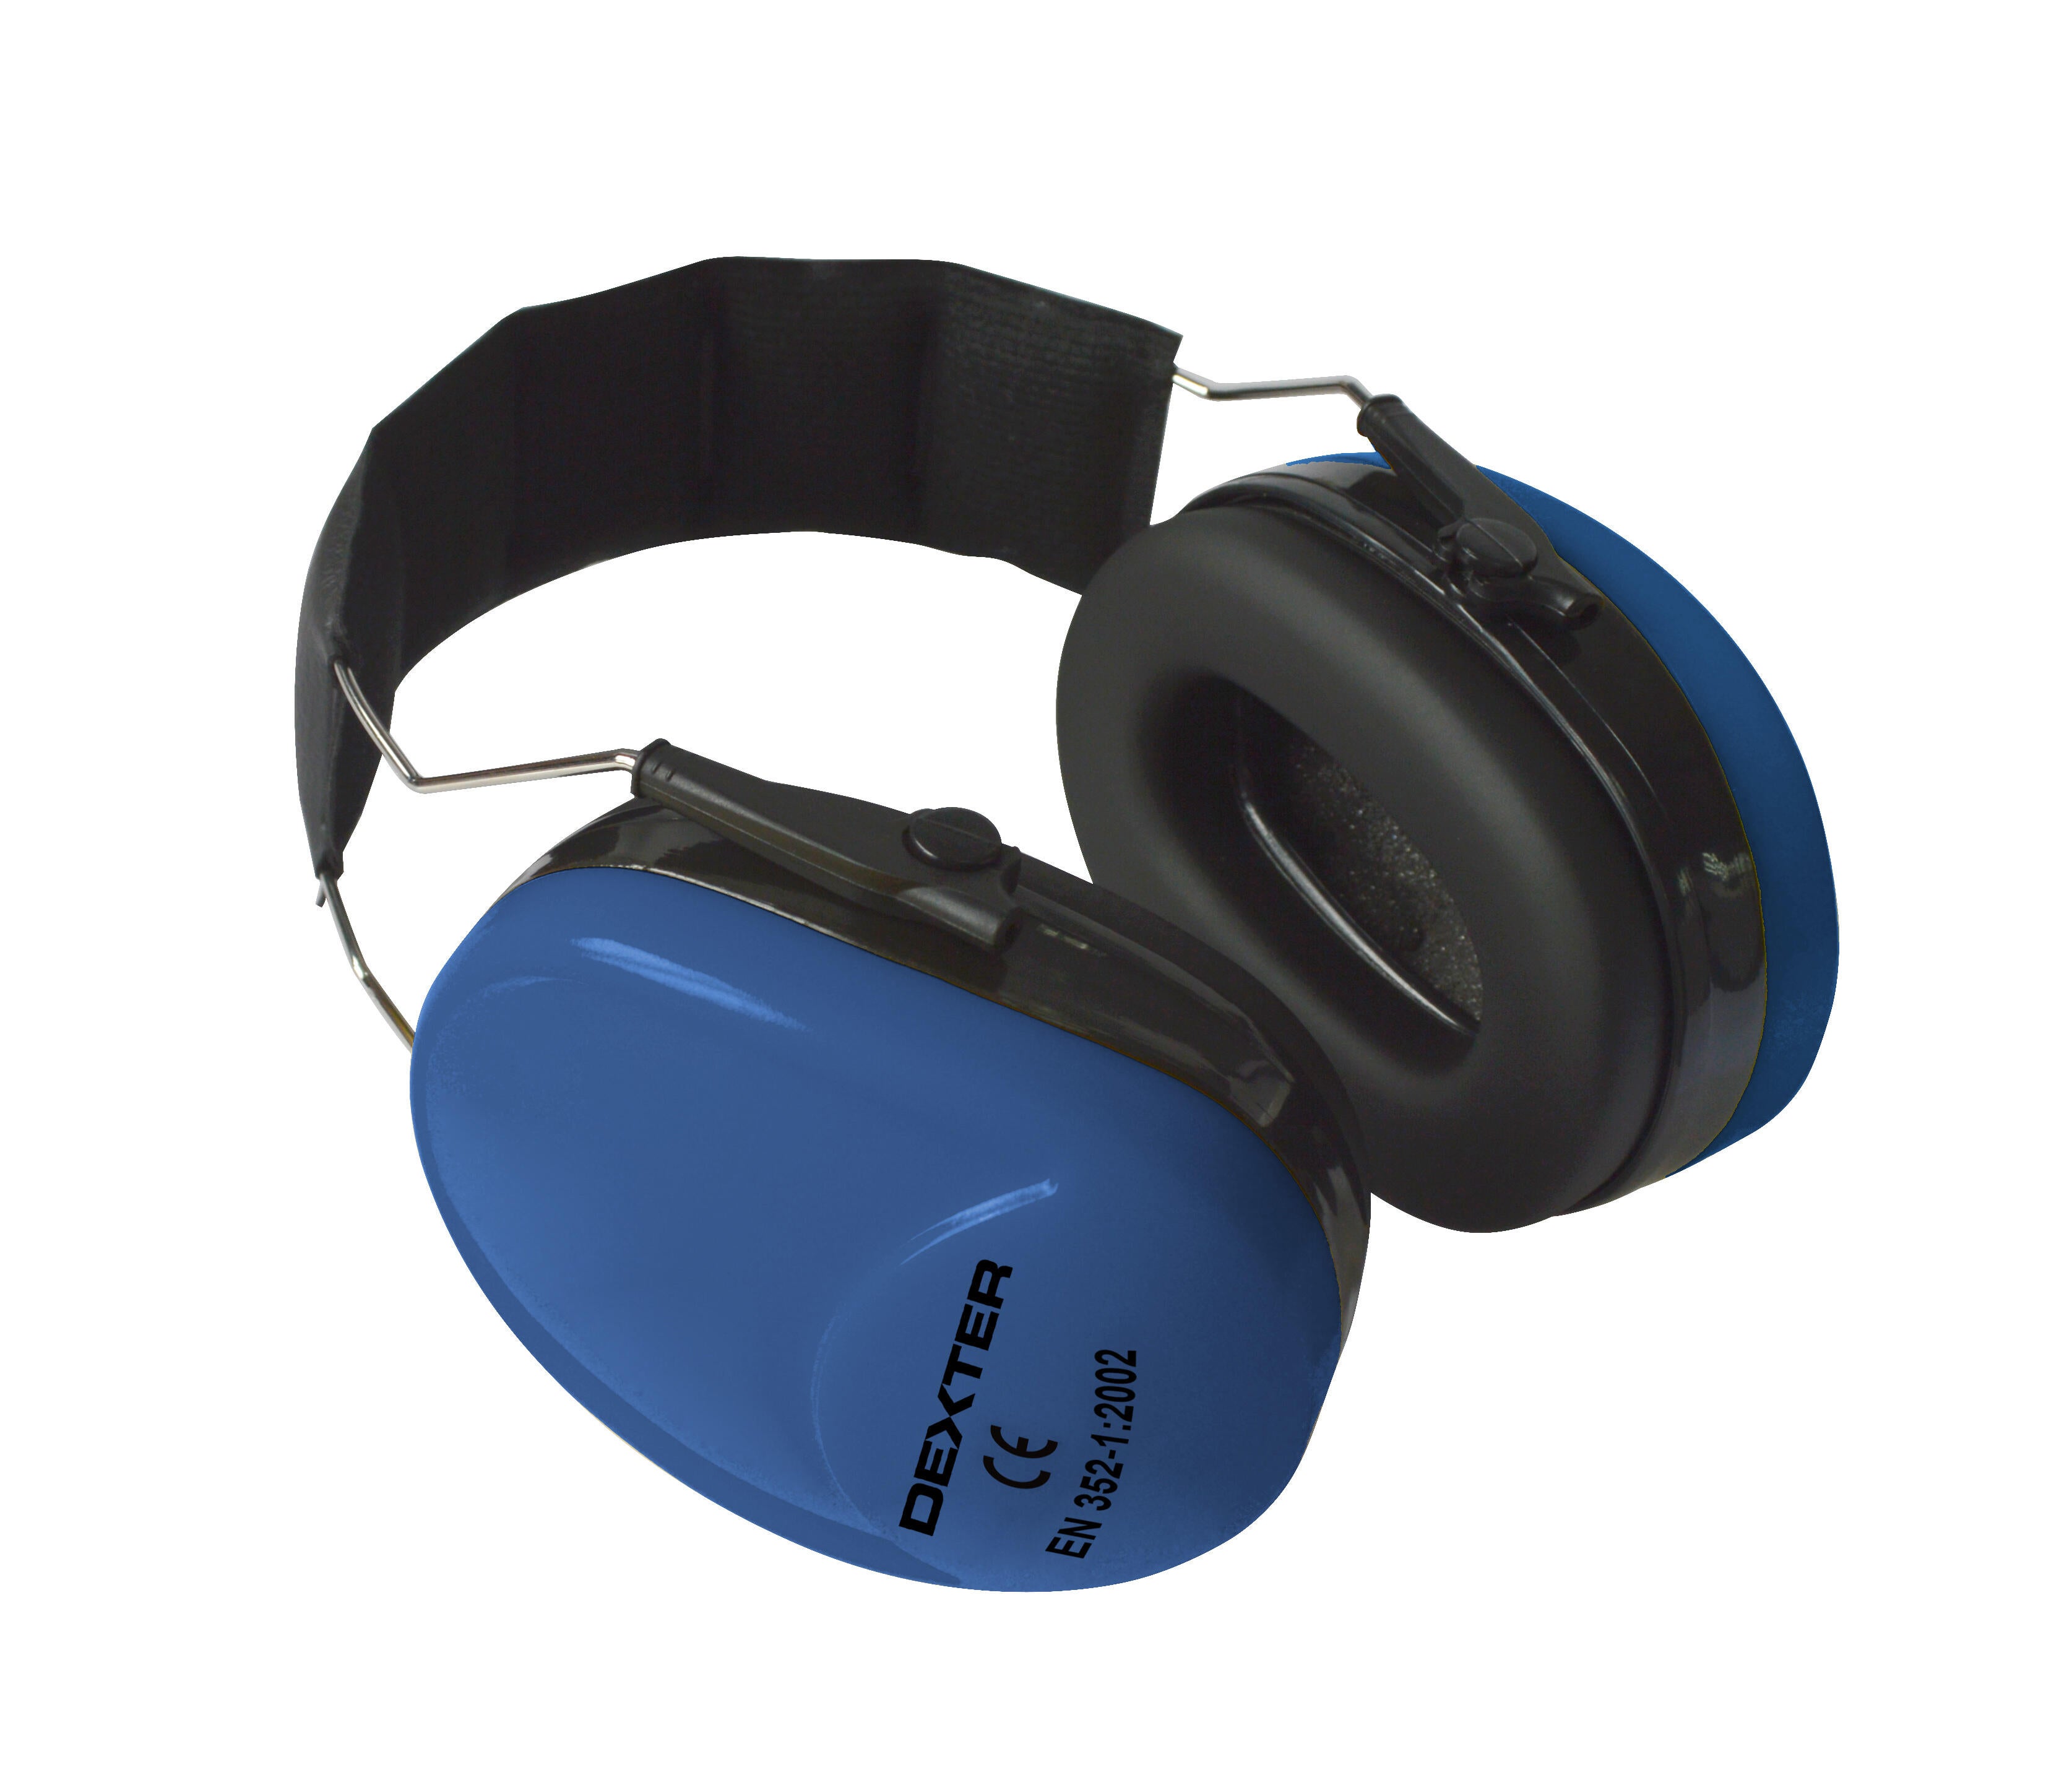 Comprar protección auditiva Concept online